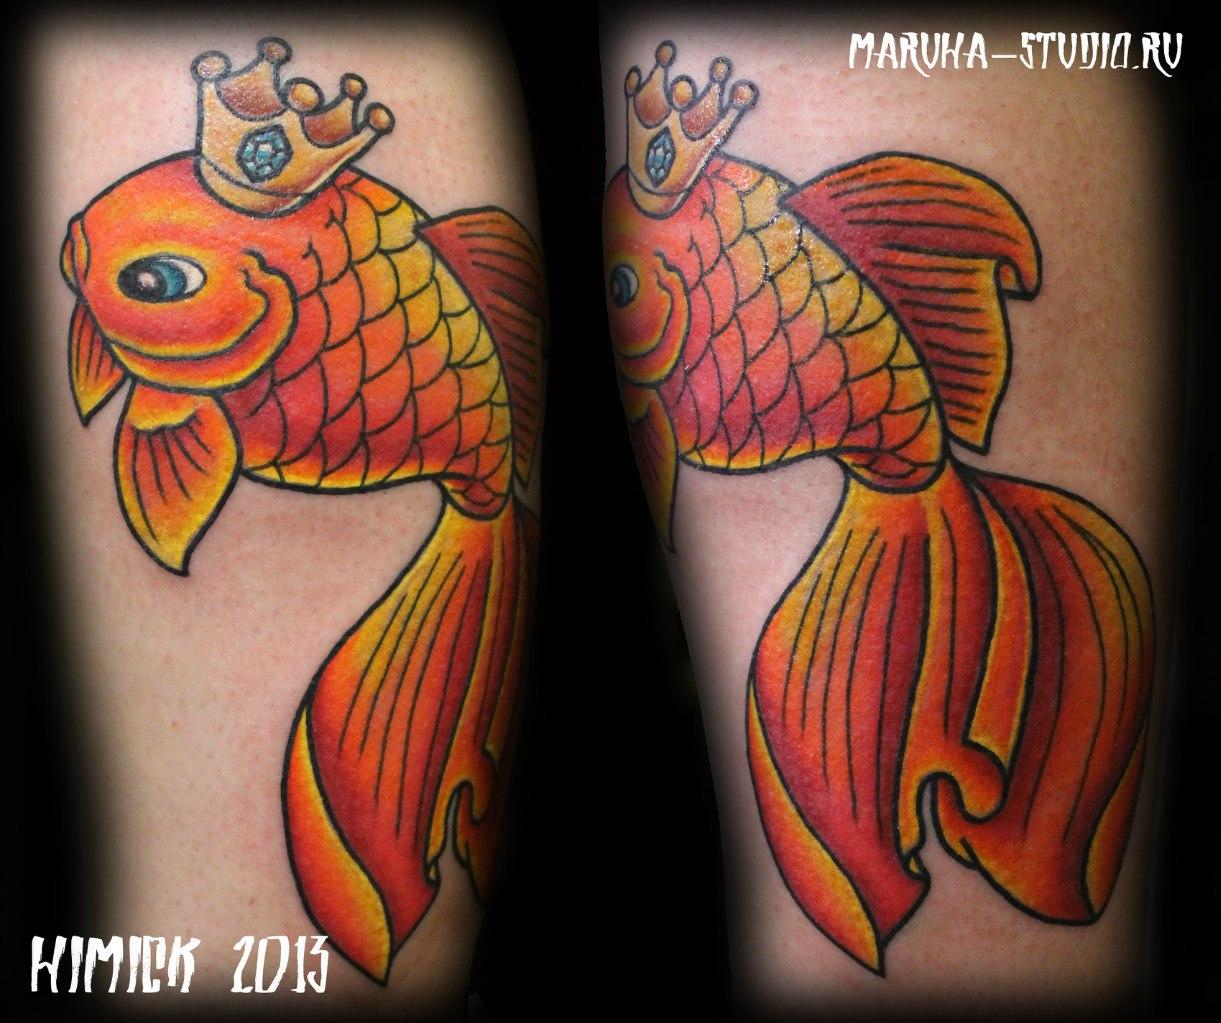 Художественная татуировка «Золотая рыбка». Выполнена мастером Евгением Булгаковым за 2 часа. Месторасположение: женская нога (икра)